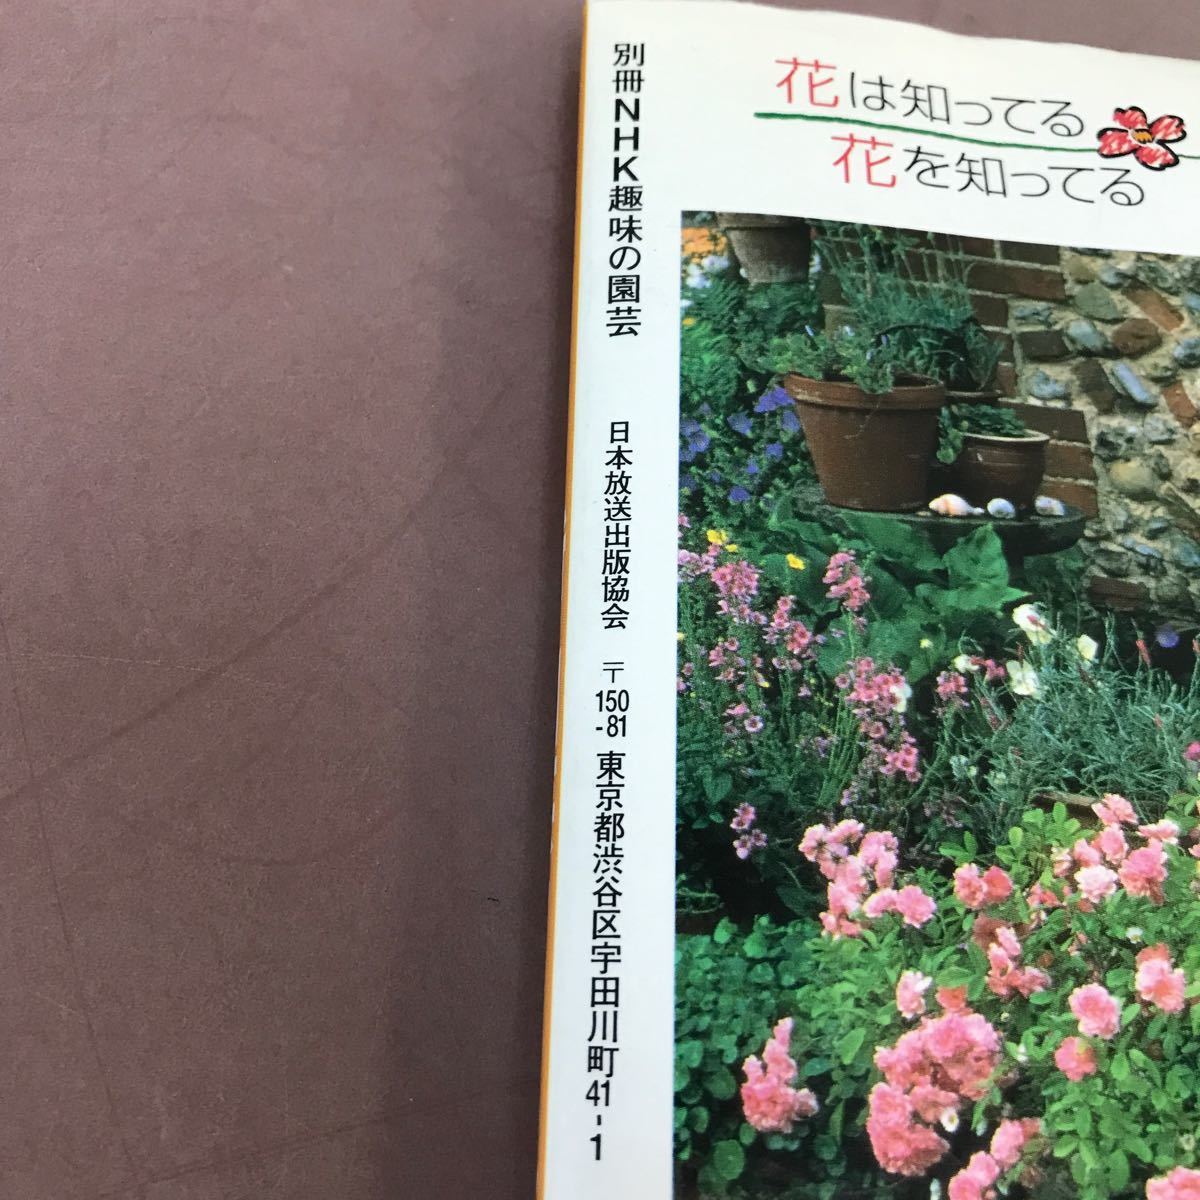 D12-011 отдельный выпуск NHK хобби. садоводство новый * садоводство klinik3 цветочный горшок *. цветок NHK выпускать 